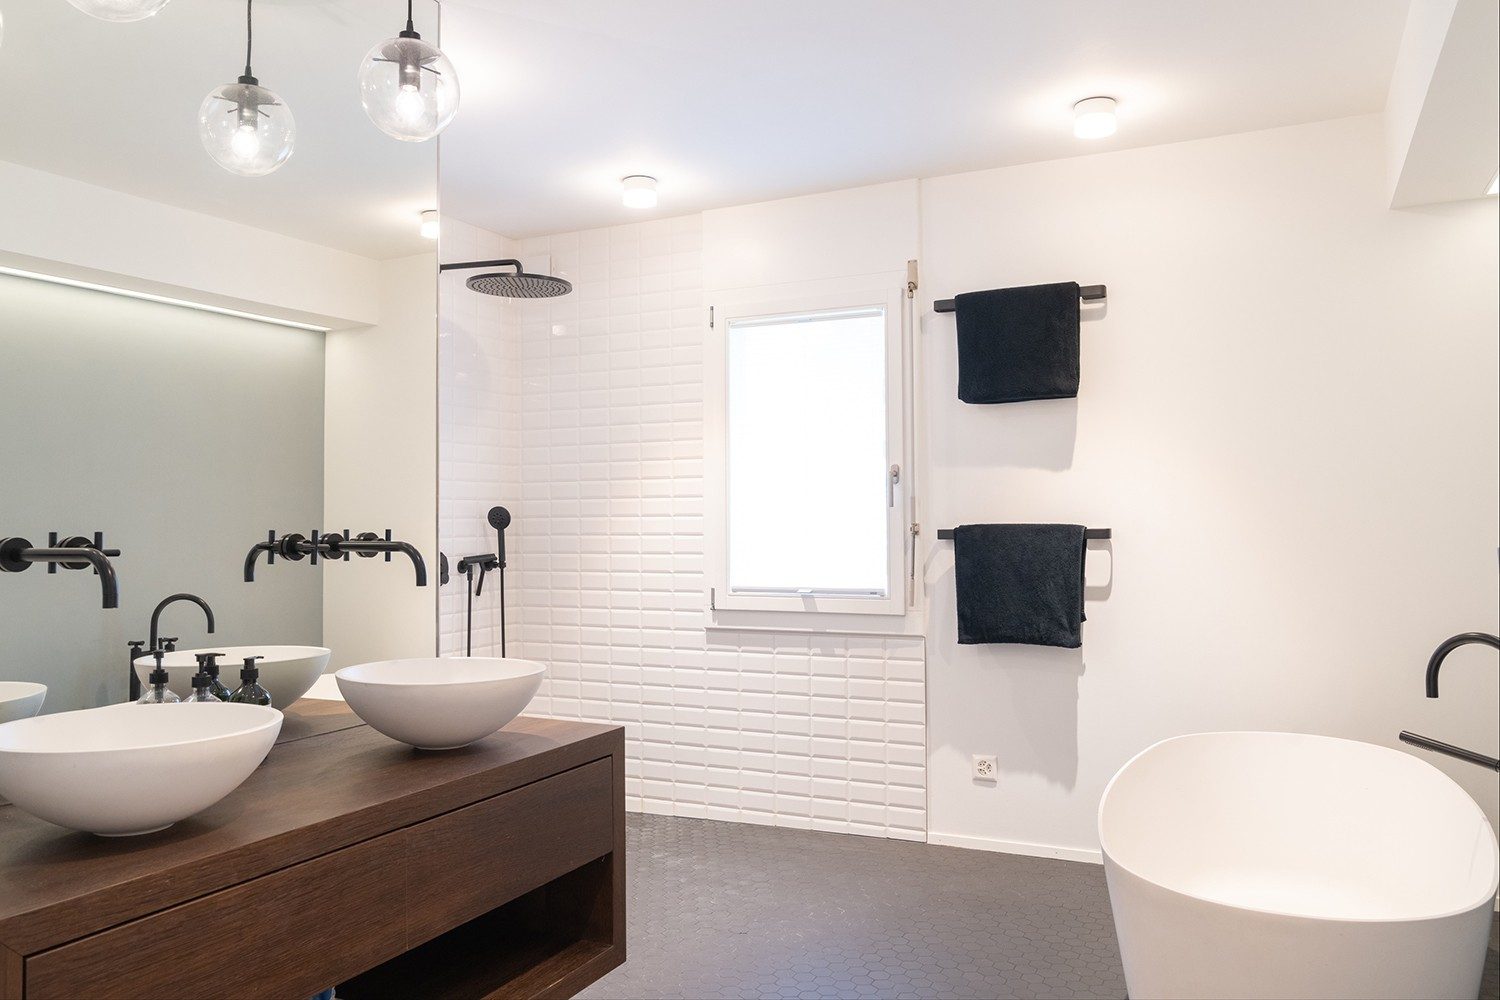 La salle de bain en blanc et noir présente de jolis détails en bois.